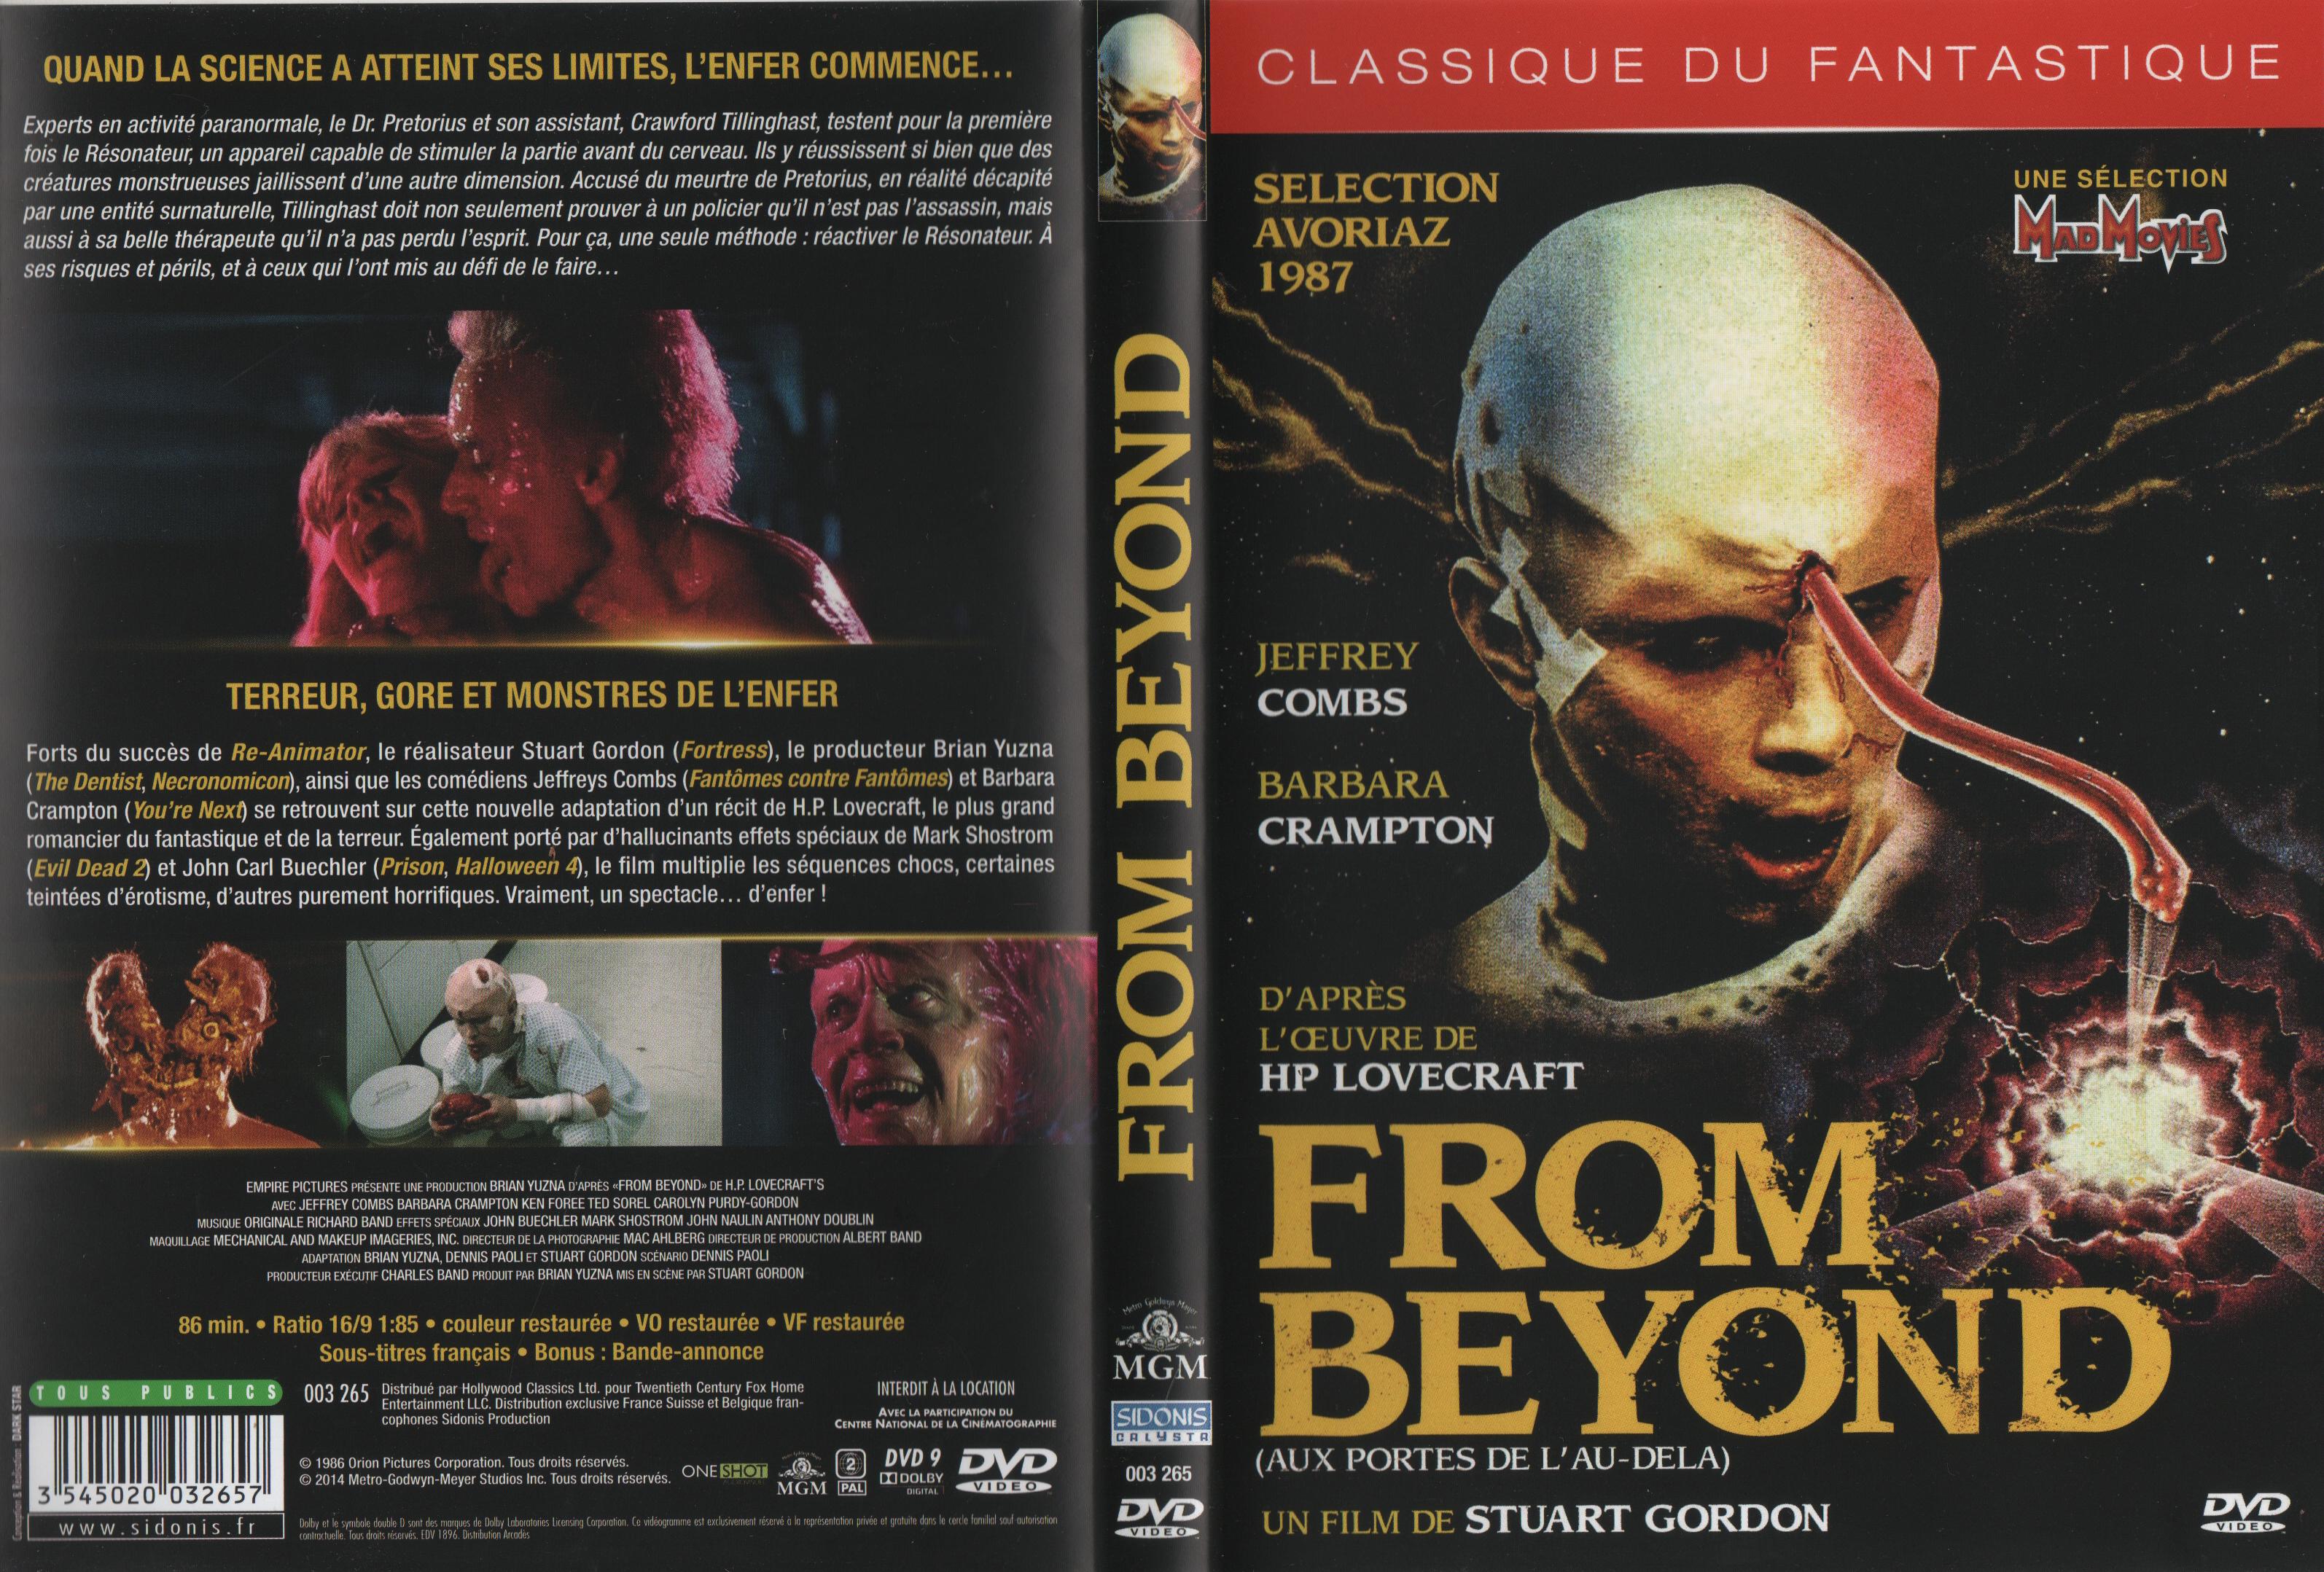 Jaquette DVD From beyond Aux portes de l